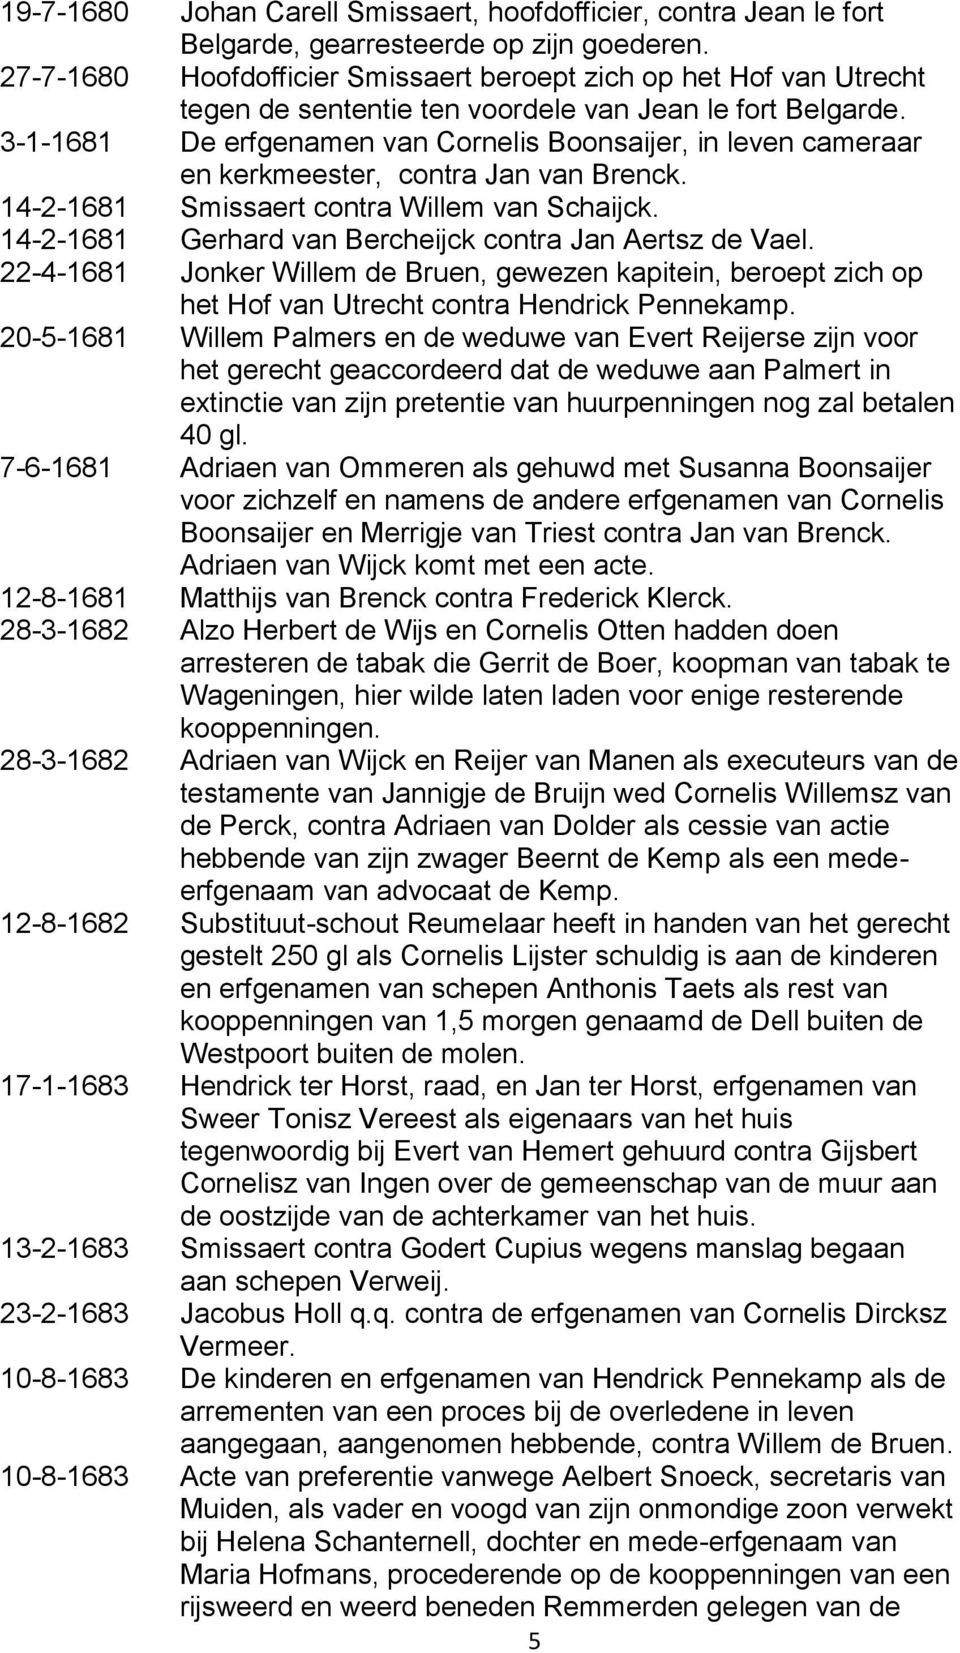 3-1-1681 De erfgenamen van Cornelis Boonsaijer, in leven cameraar en kerkmeester, contra Jan van Brenck. 14-2-1681 Smissaert contra Willem van Schaijck.